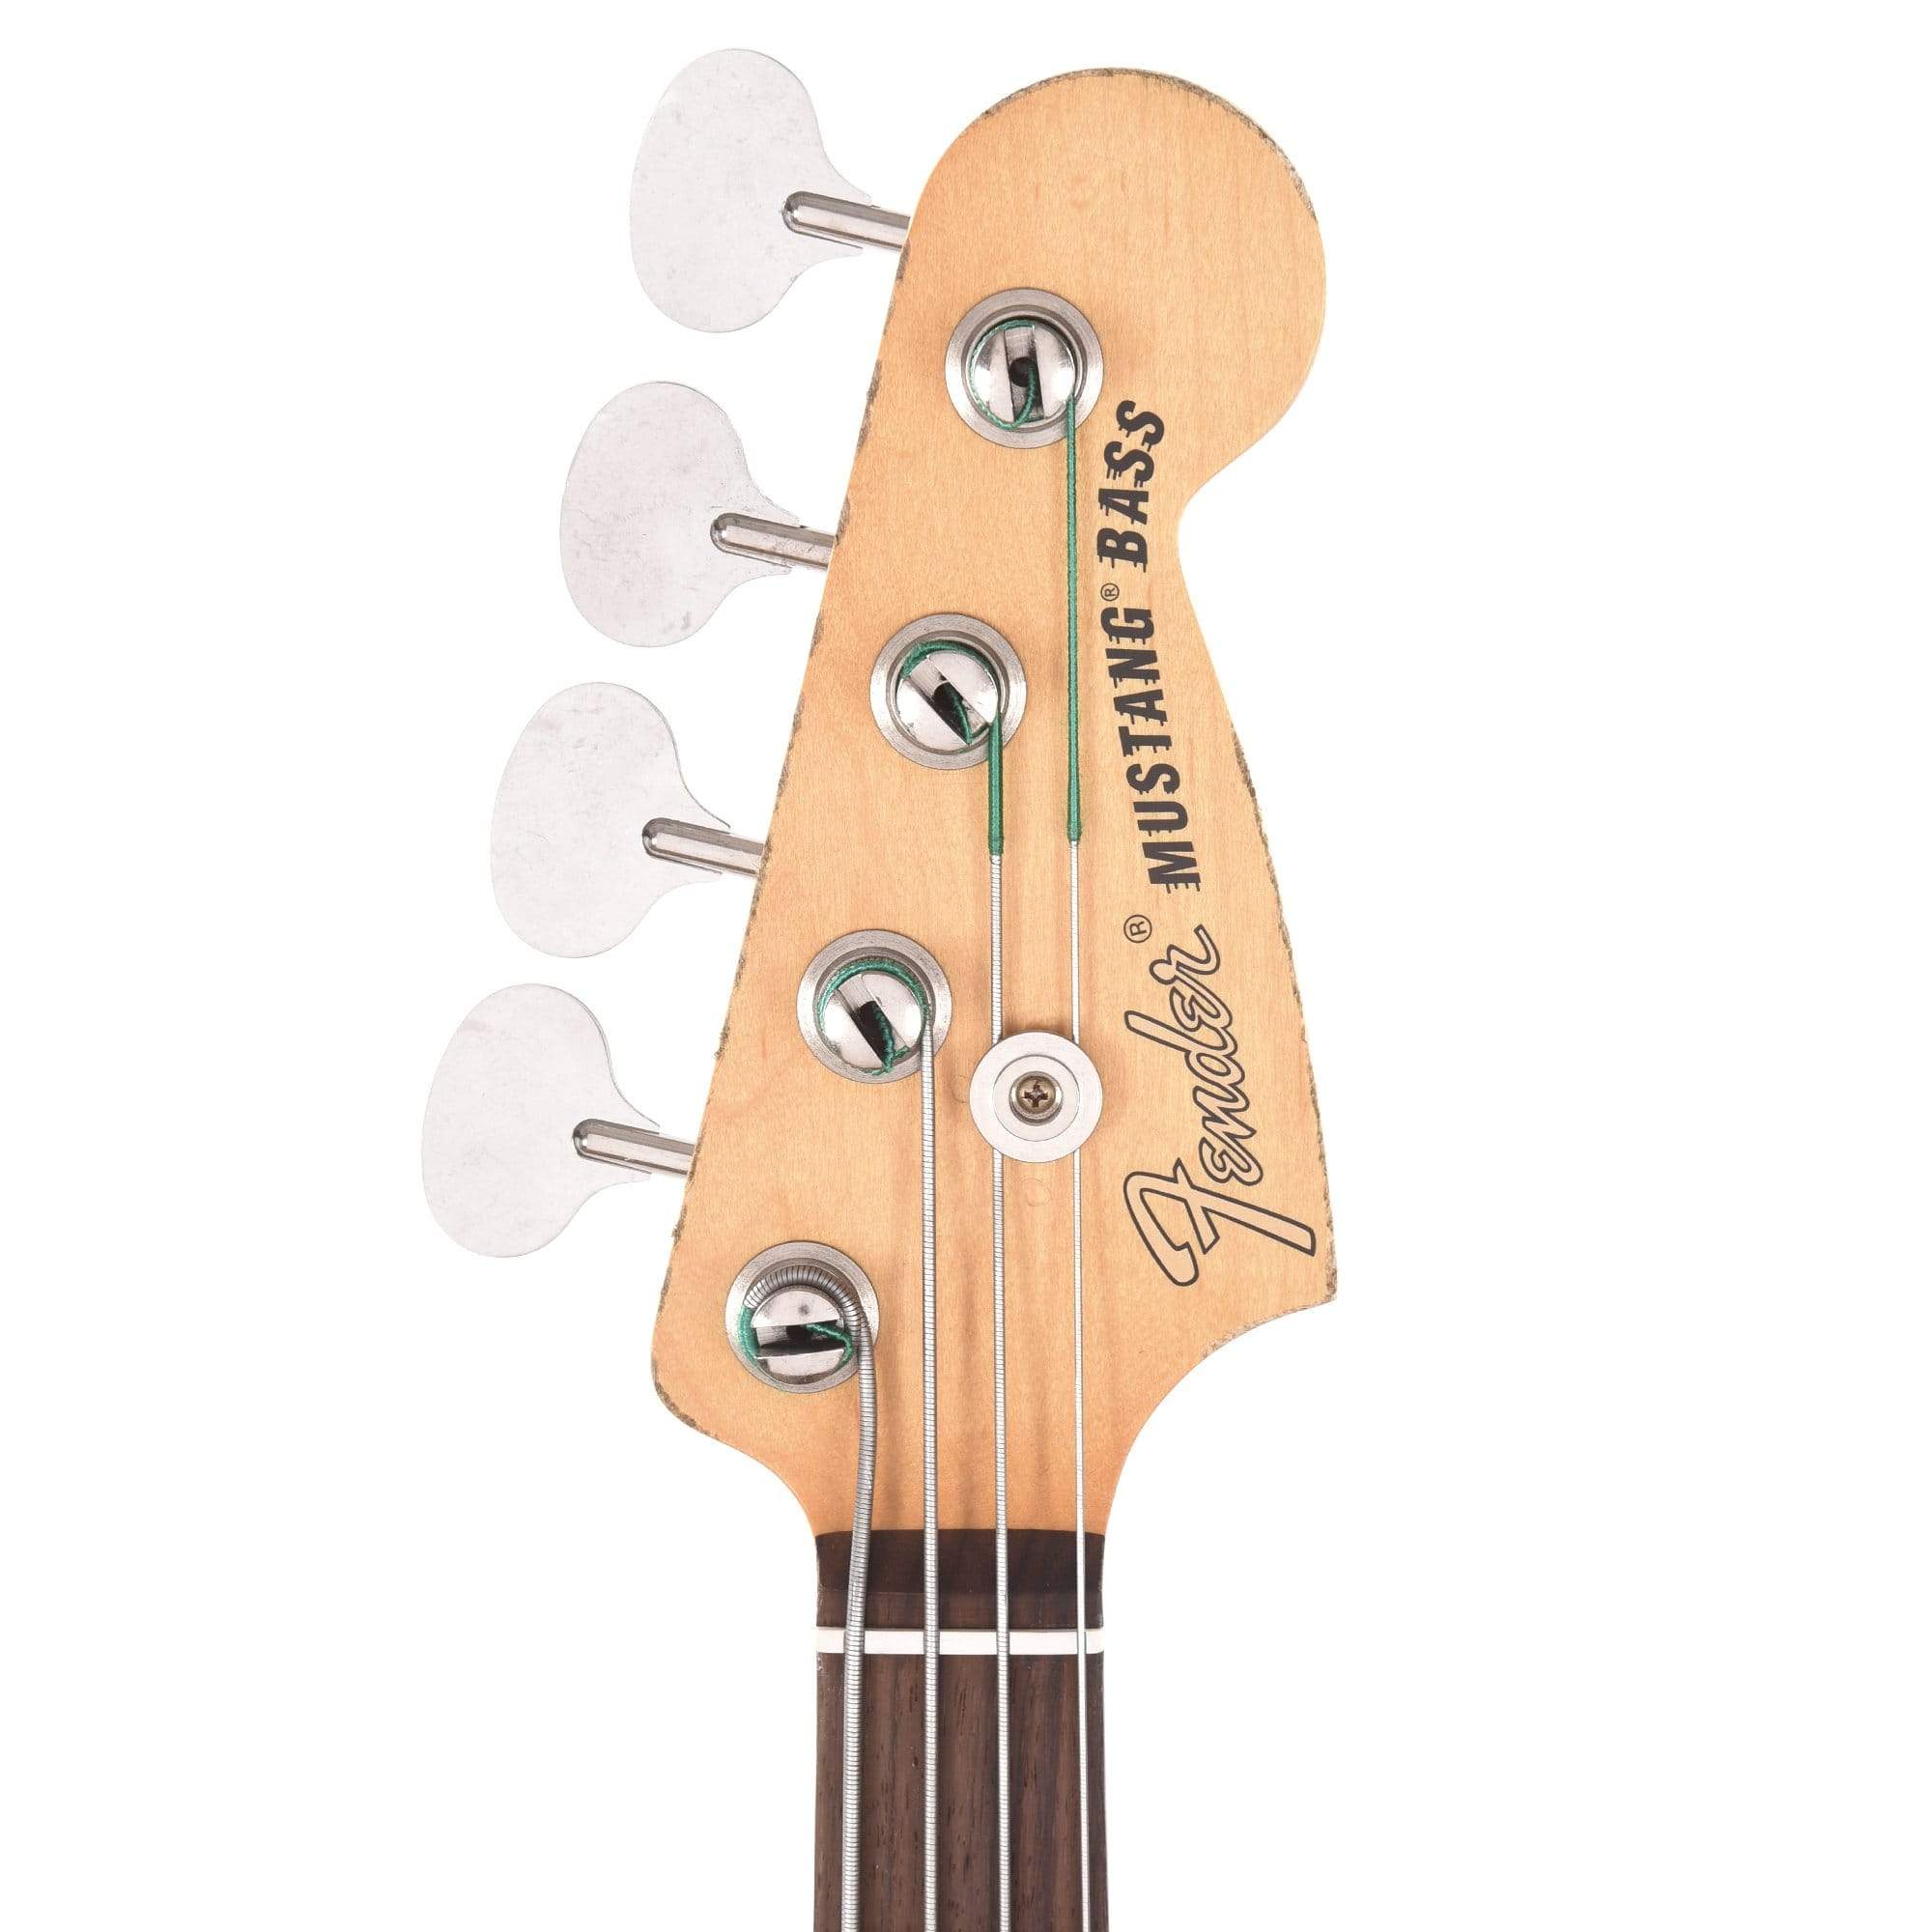 Fender Artist Justin Meldal-Johnsen Mustang Bass Black Bass Guitars / Short Scale